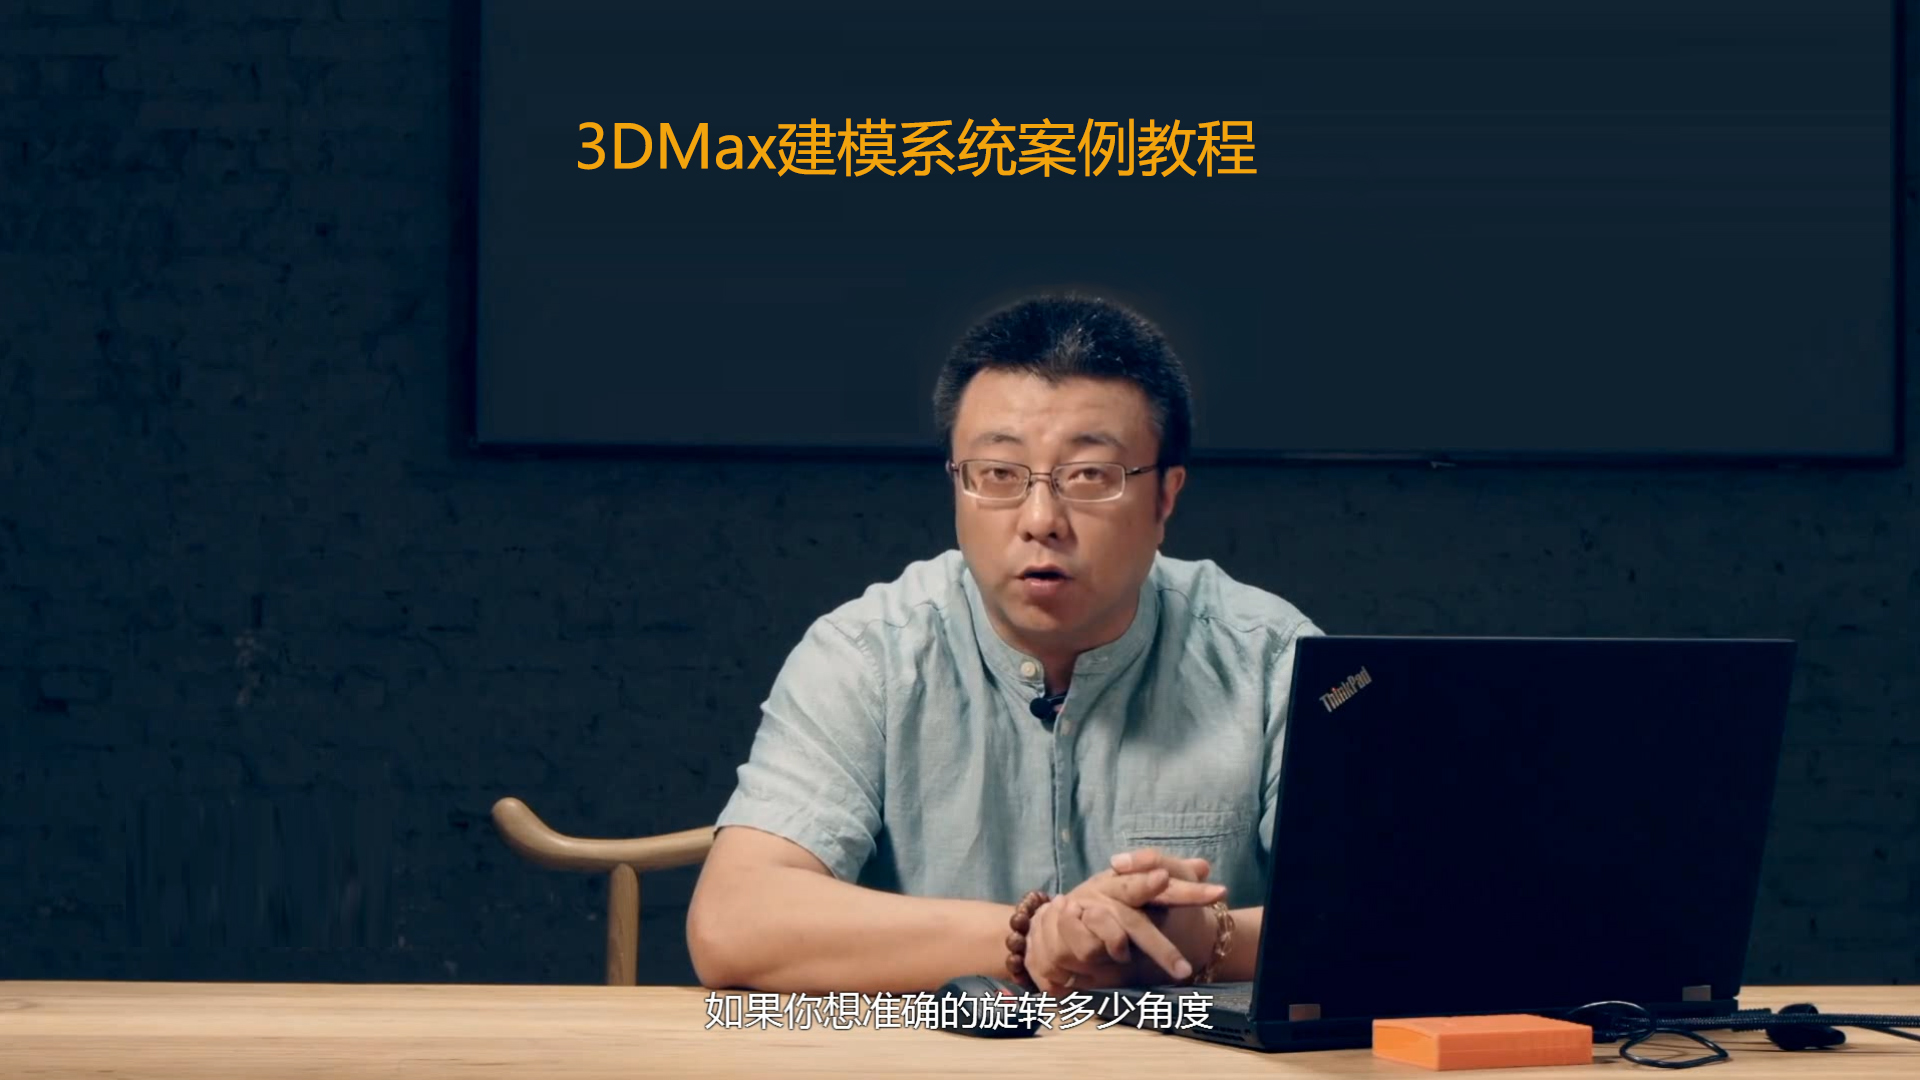 [亓鑫辉] 3DMax建模系统案例教程